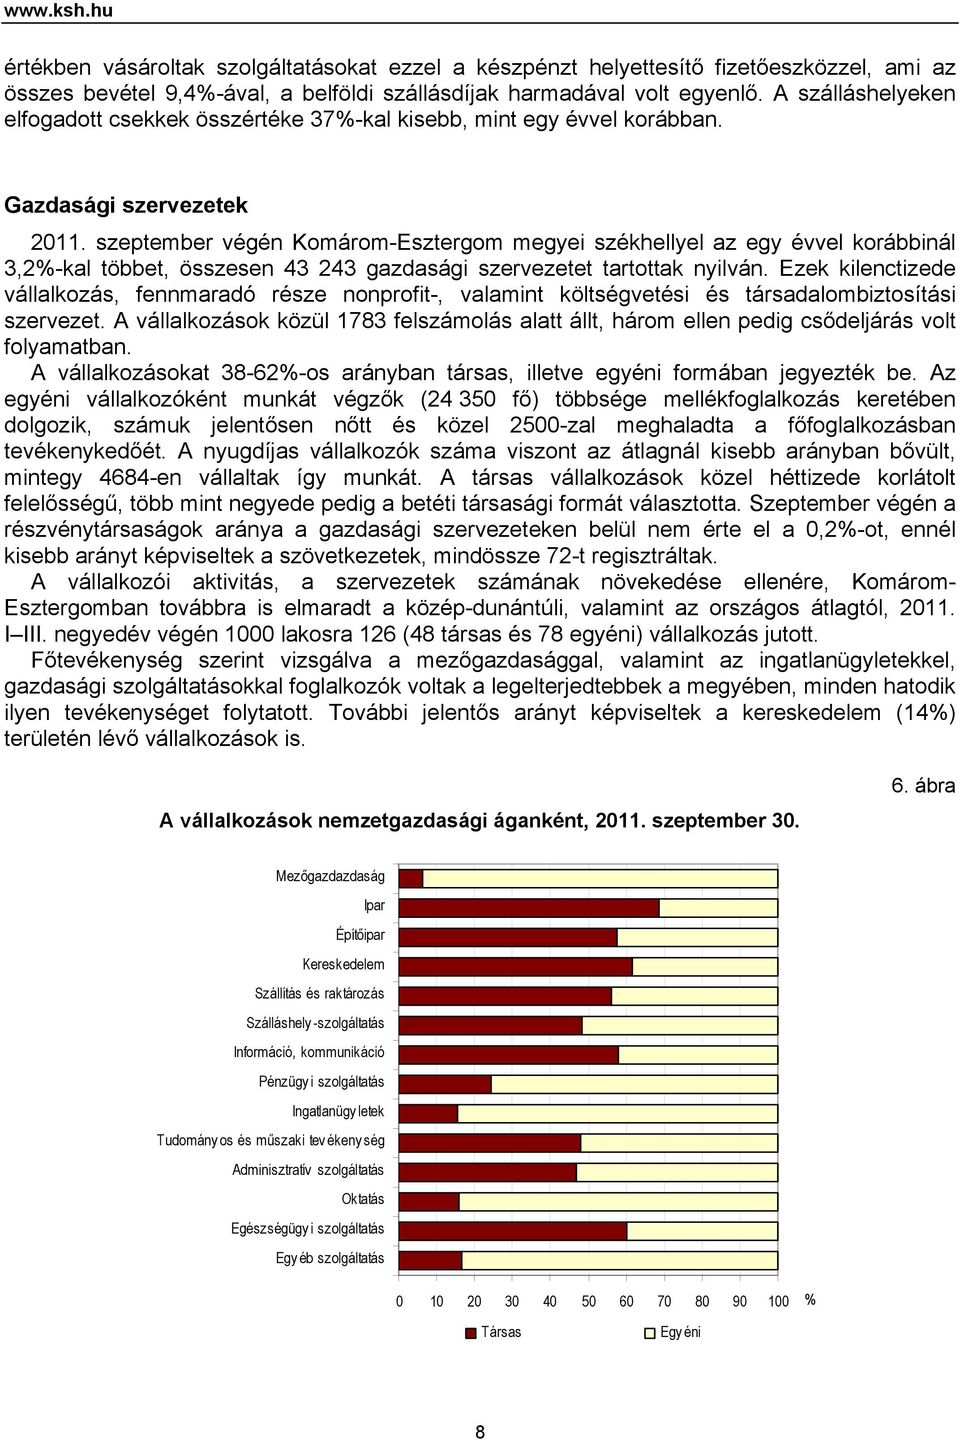 szeptember végén Komárom-Esztergom megyei székhellyel az egy évvel korábbinál 3,2%-kal többet, összesen 43 243 gazdasági szervezetet tartottak nyilván.